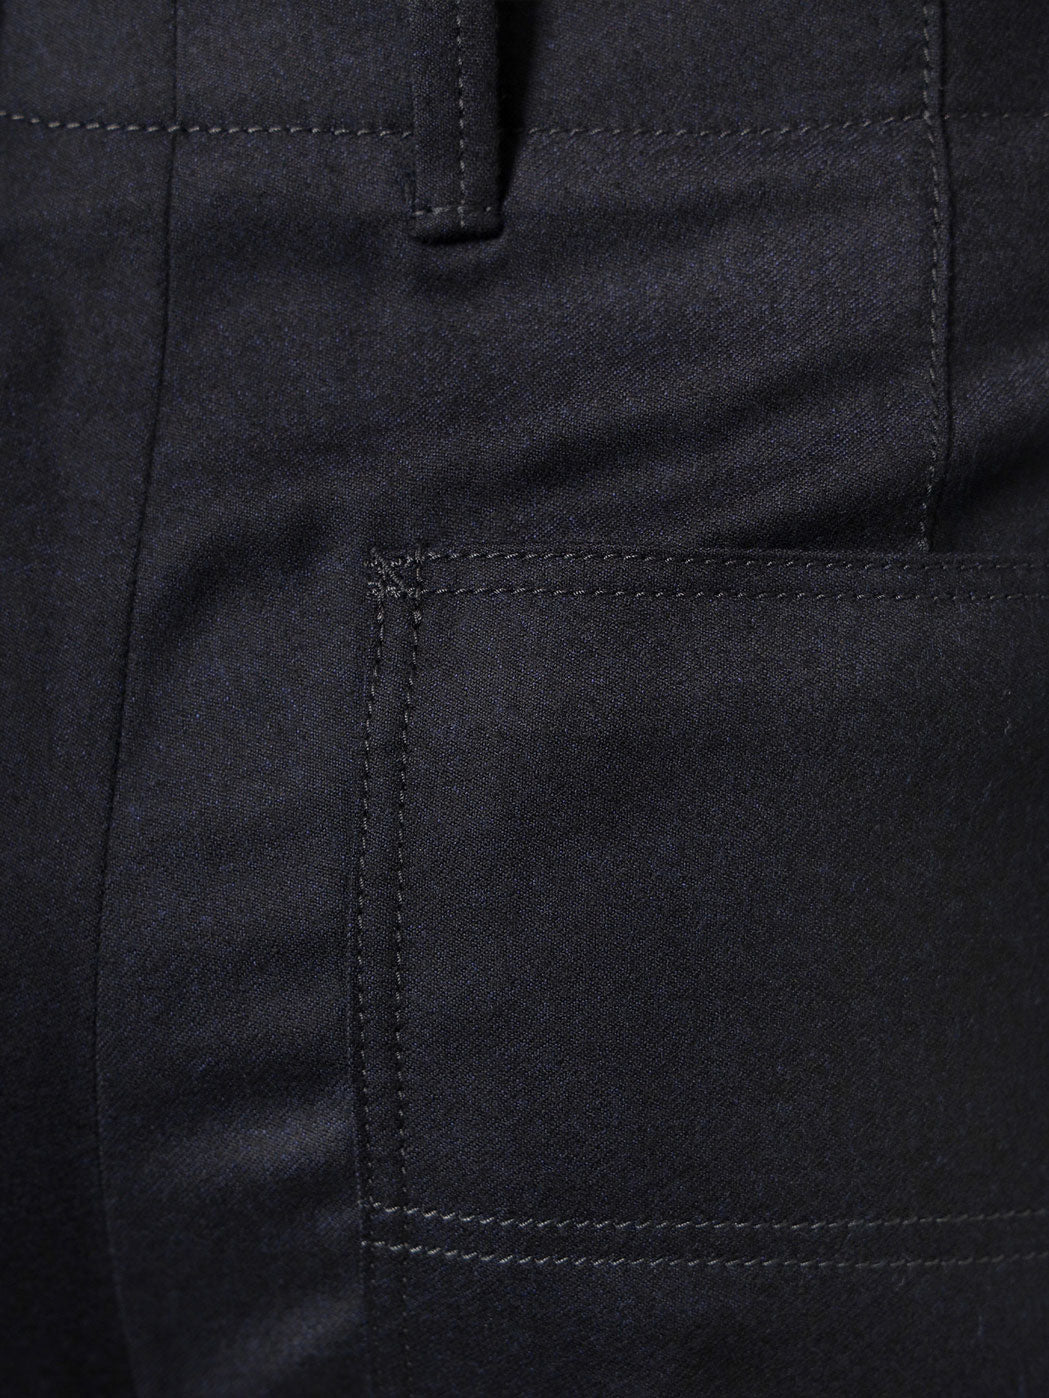 Pantalone Circle  in lana vergine   Uso esclusivo di fibre naturali e organiche